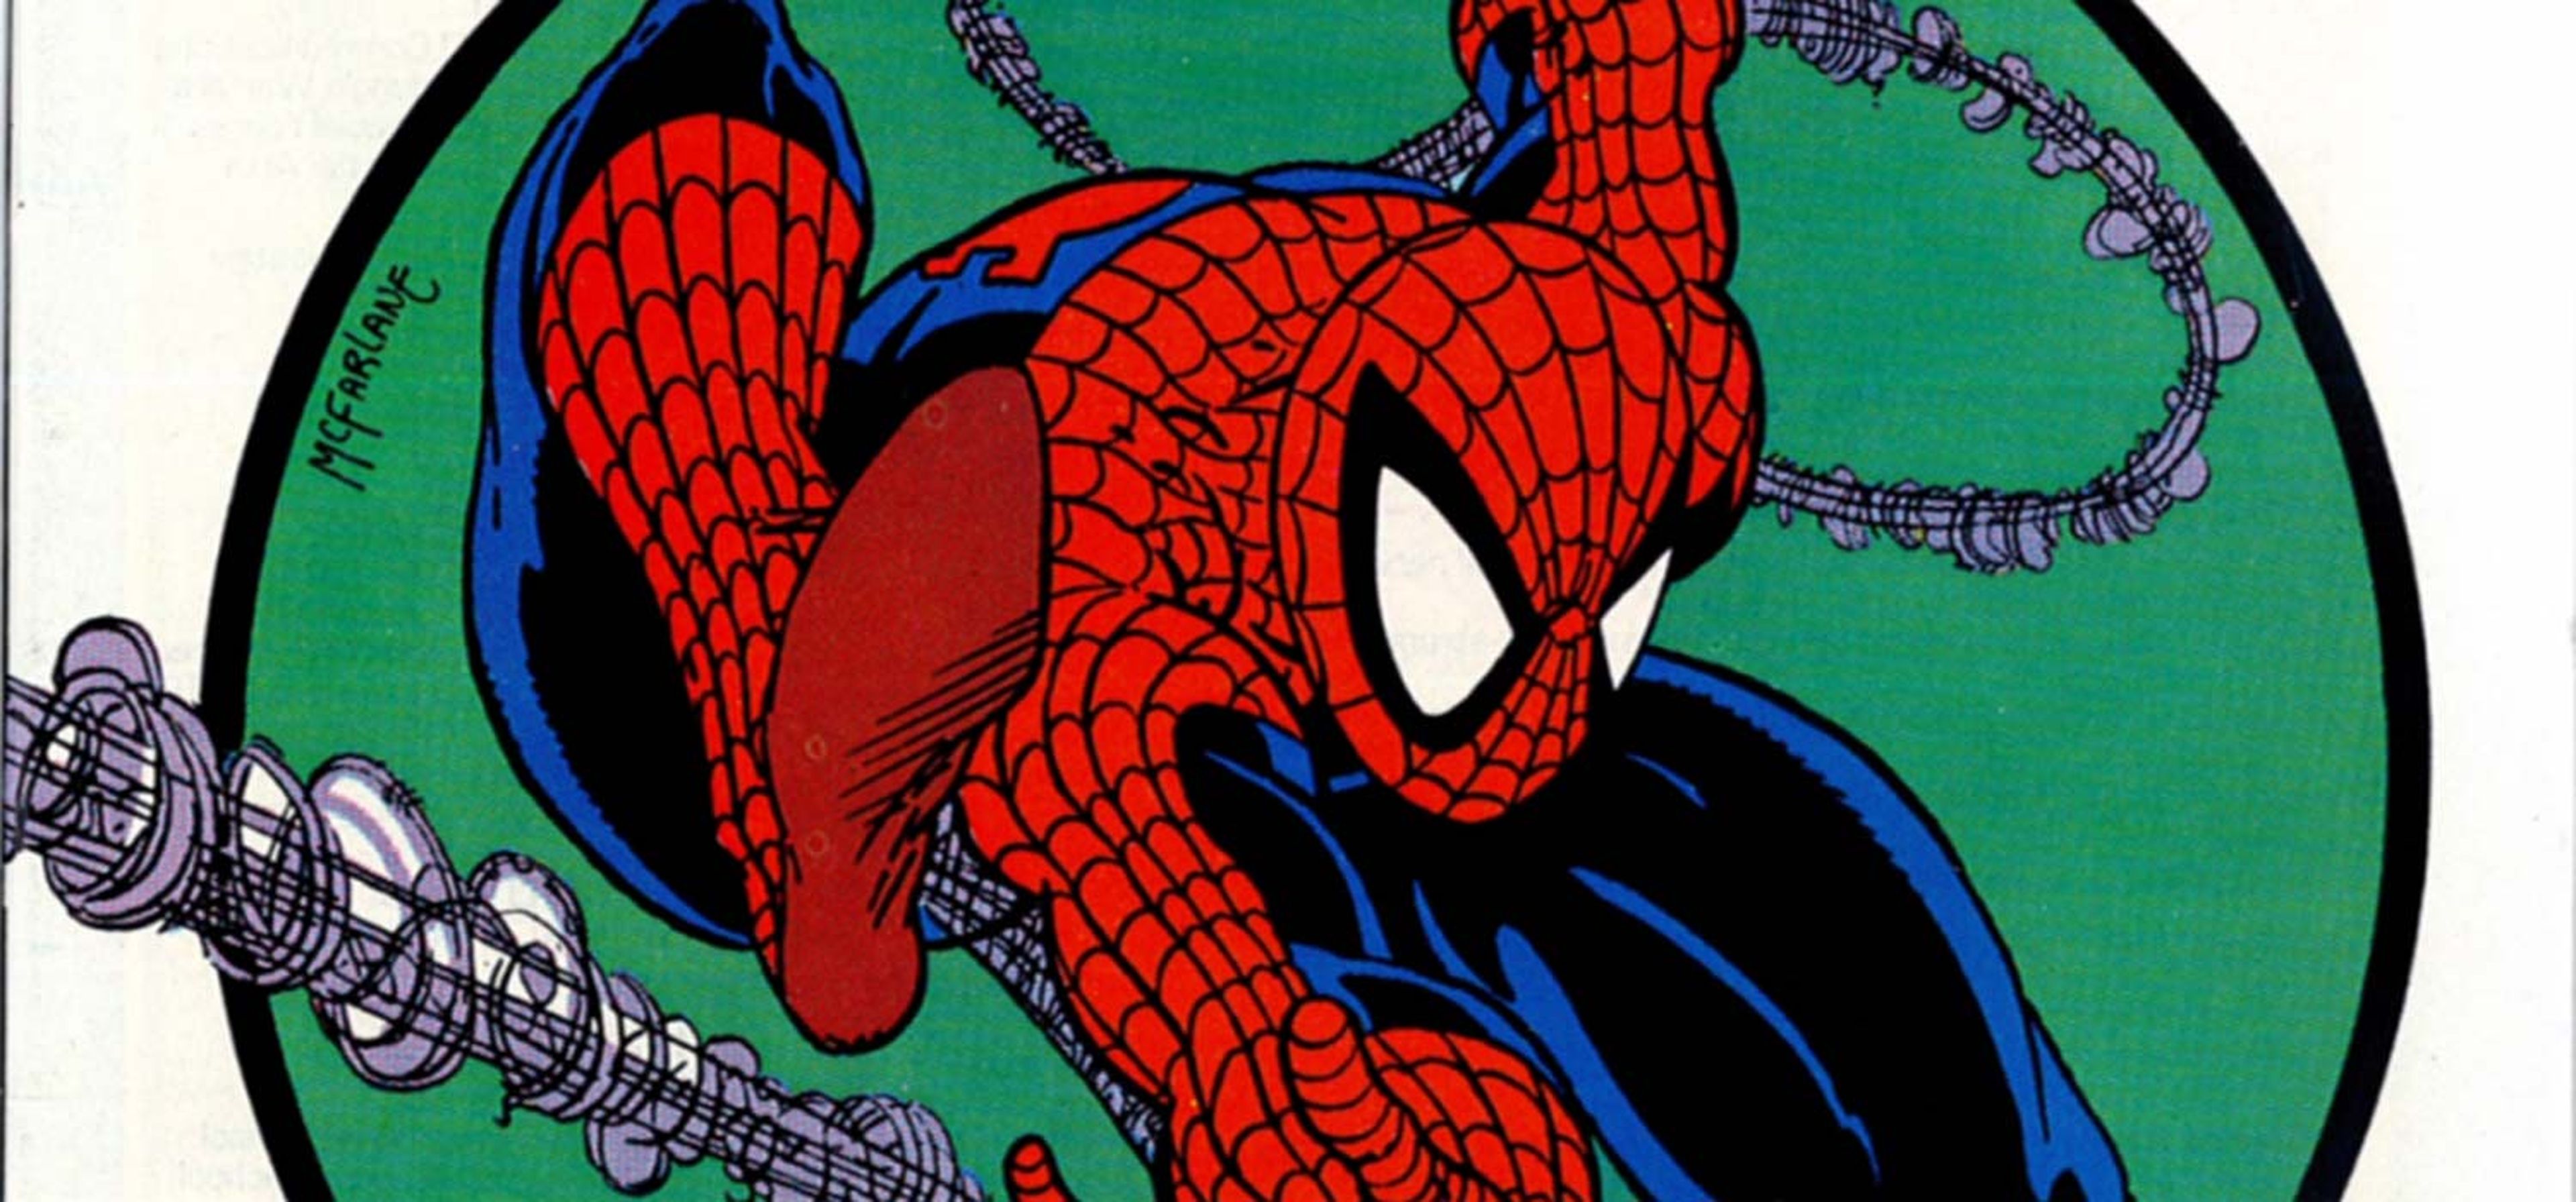 El Asombroso Spider-man La leyenda comienza